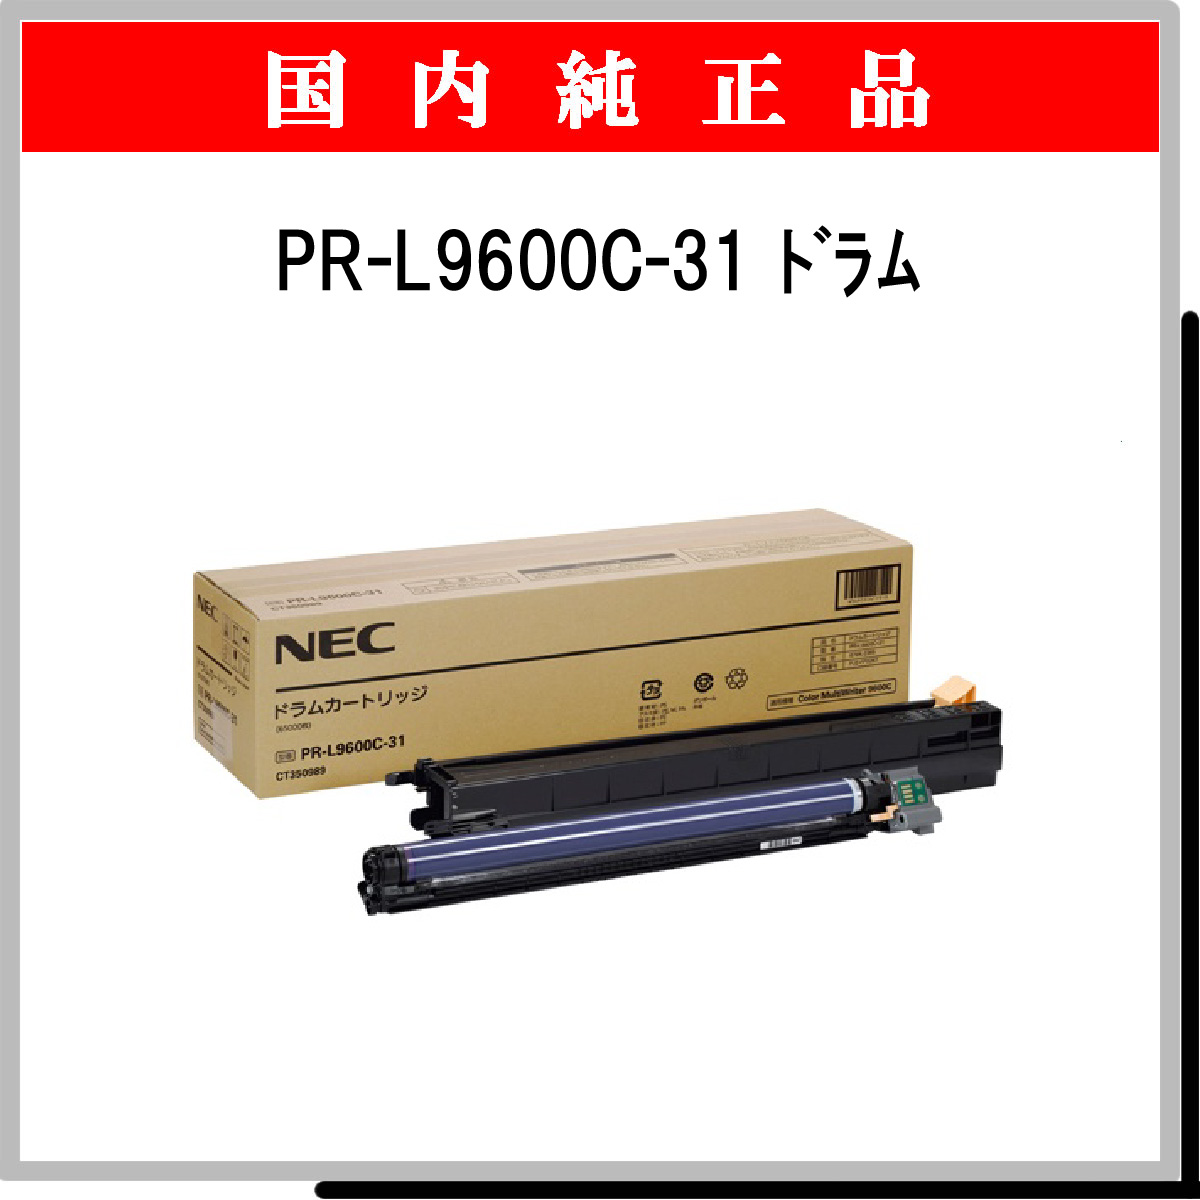 8周年記念イベントが 良品トナー NEC PR-L9300C-31 ノーブランド新品 ドラムカートリッジ Color MultiWriter  9300C, 9350C 対応